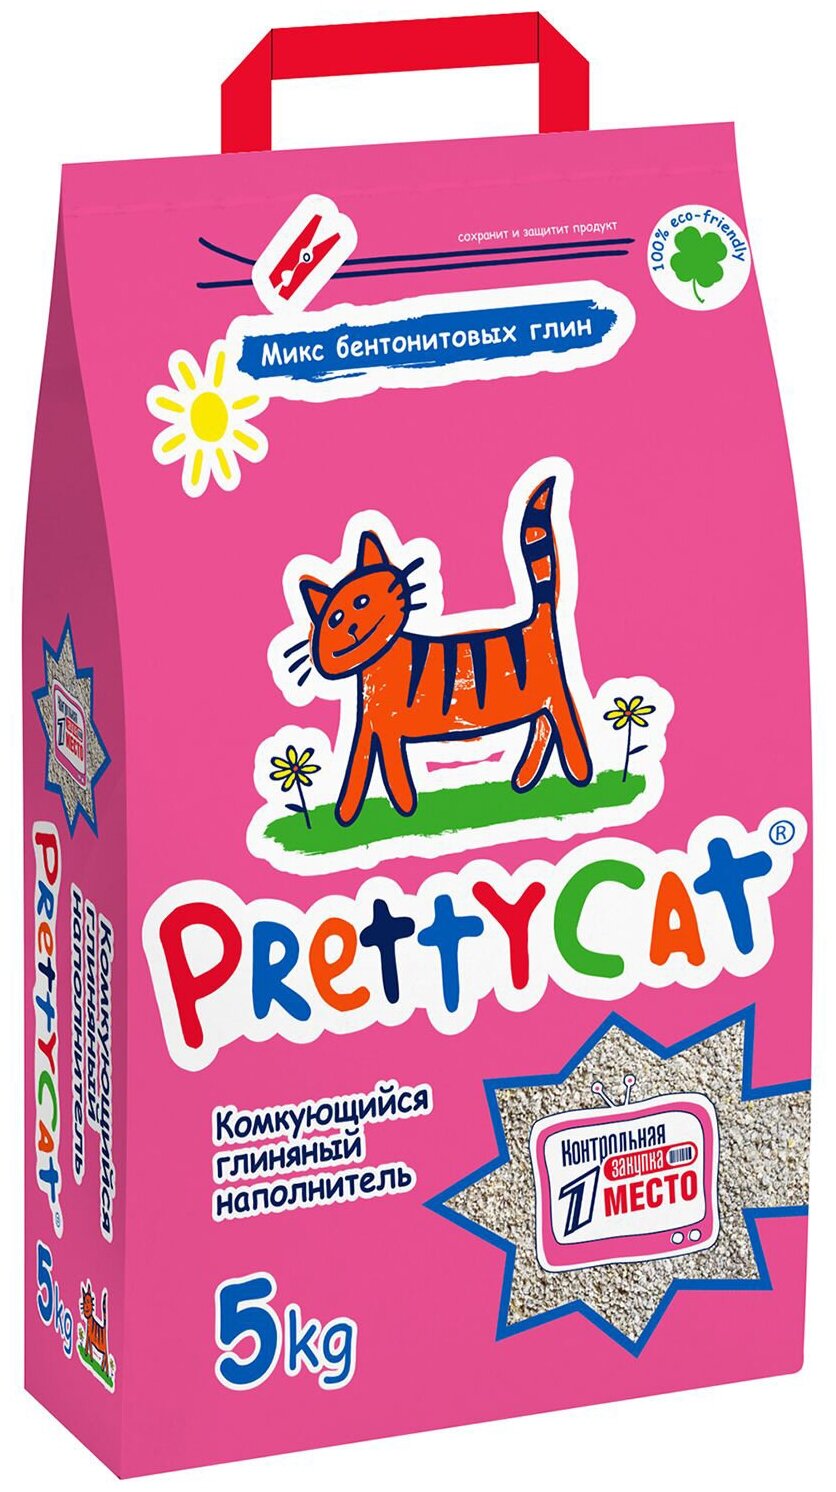 Наполнитель Pretty Cat Euro Mix для кошек комкующийся 5кг